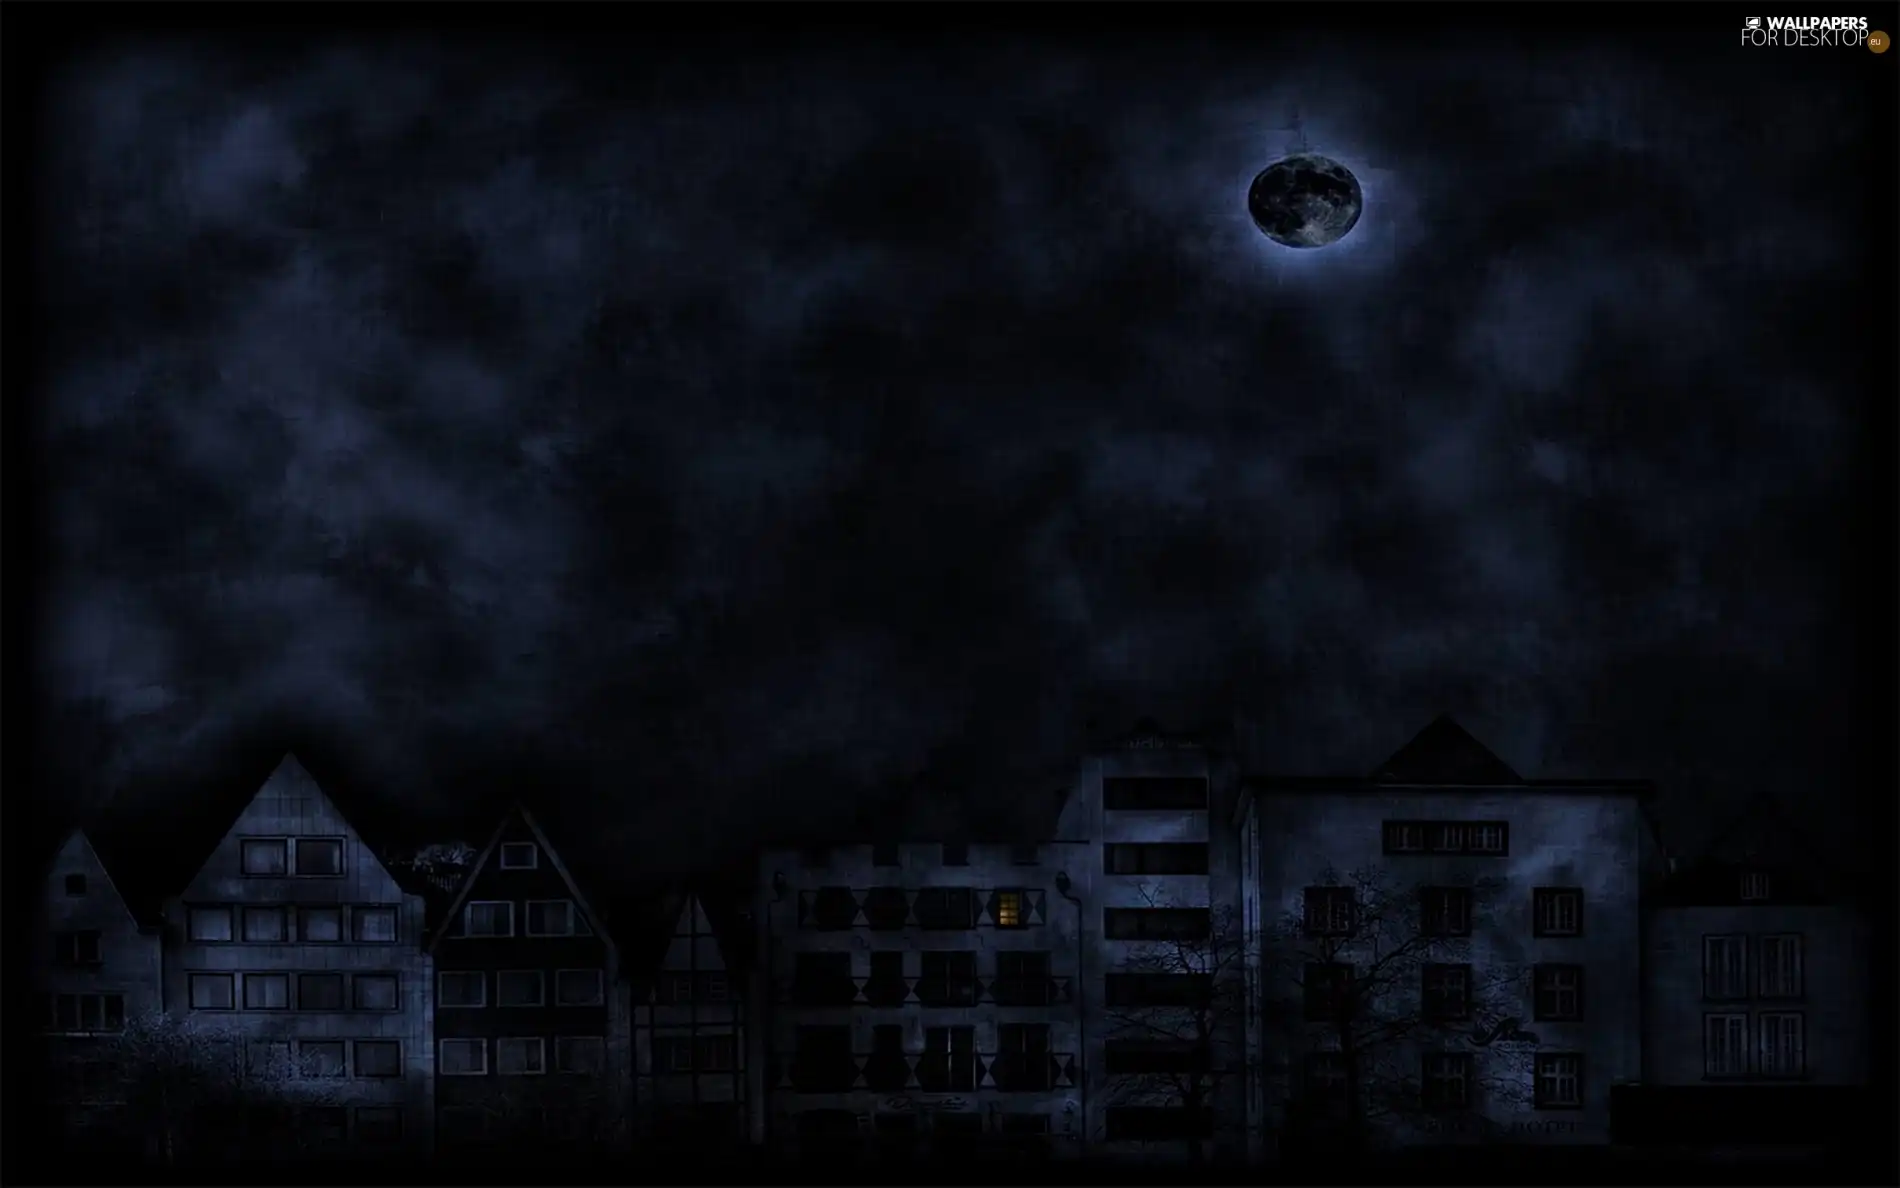 residential, Night, buildings